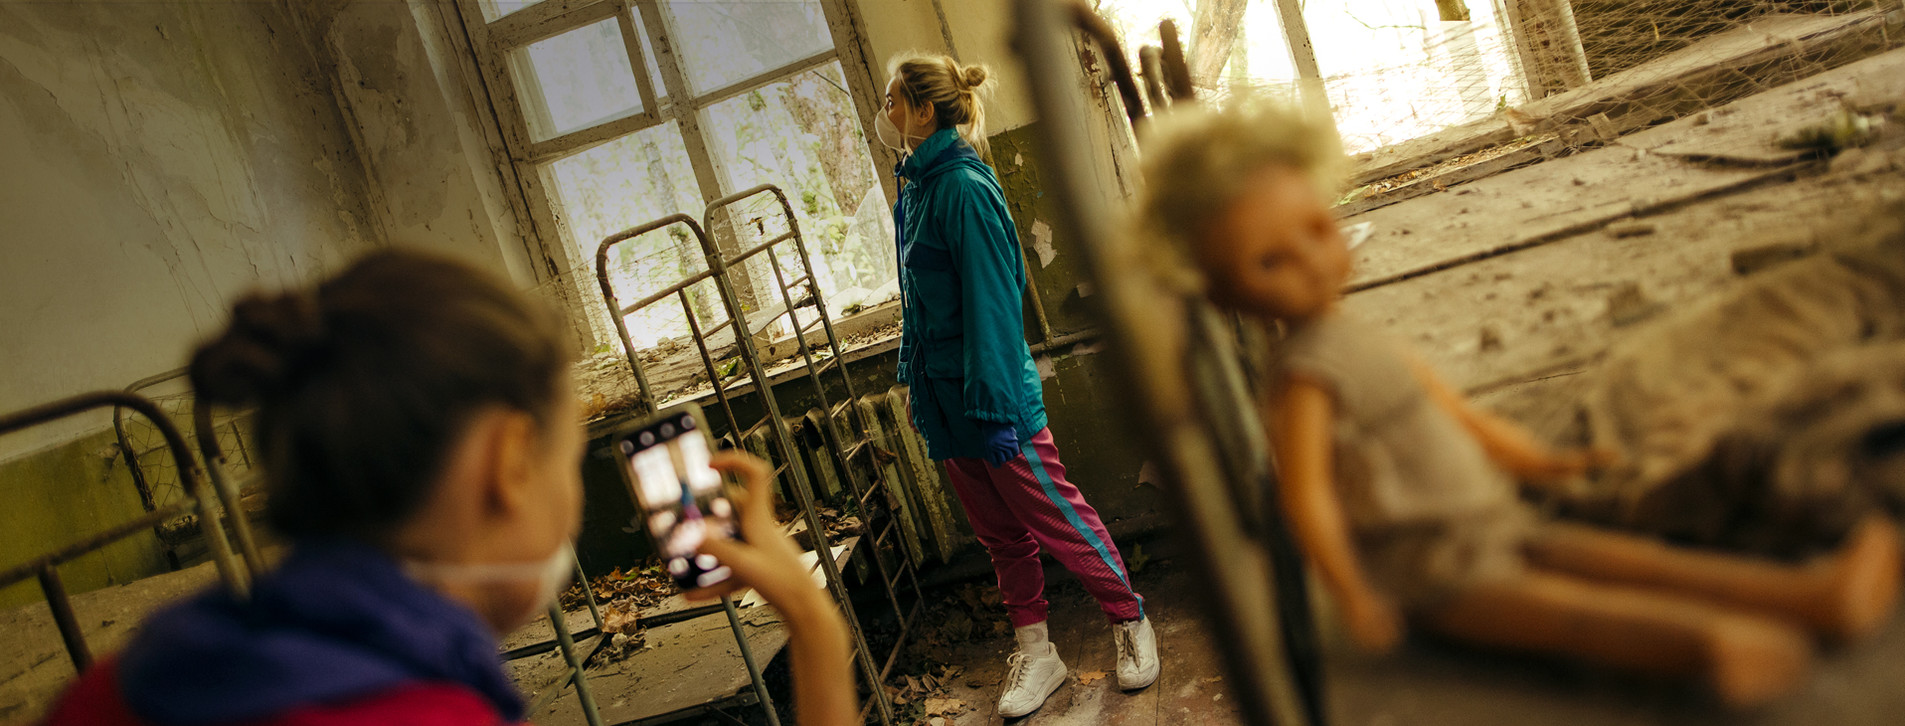 Фото 1 - Экскурсия в Чернобыль для компании